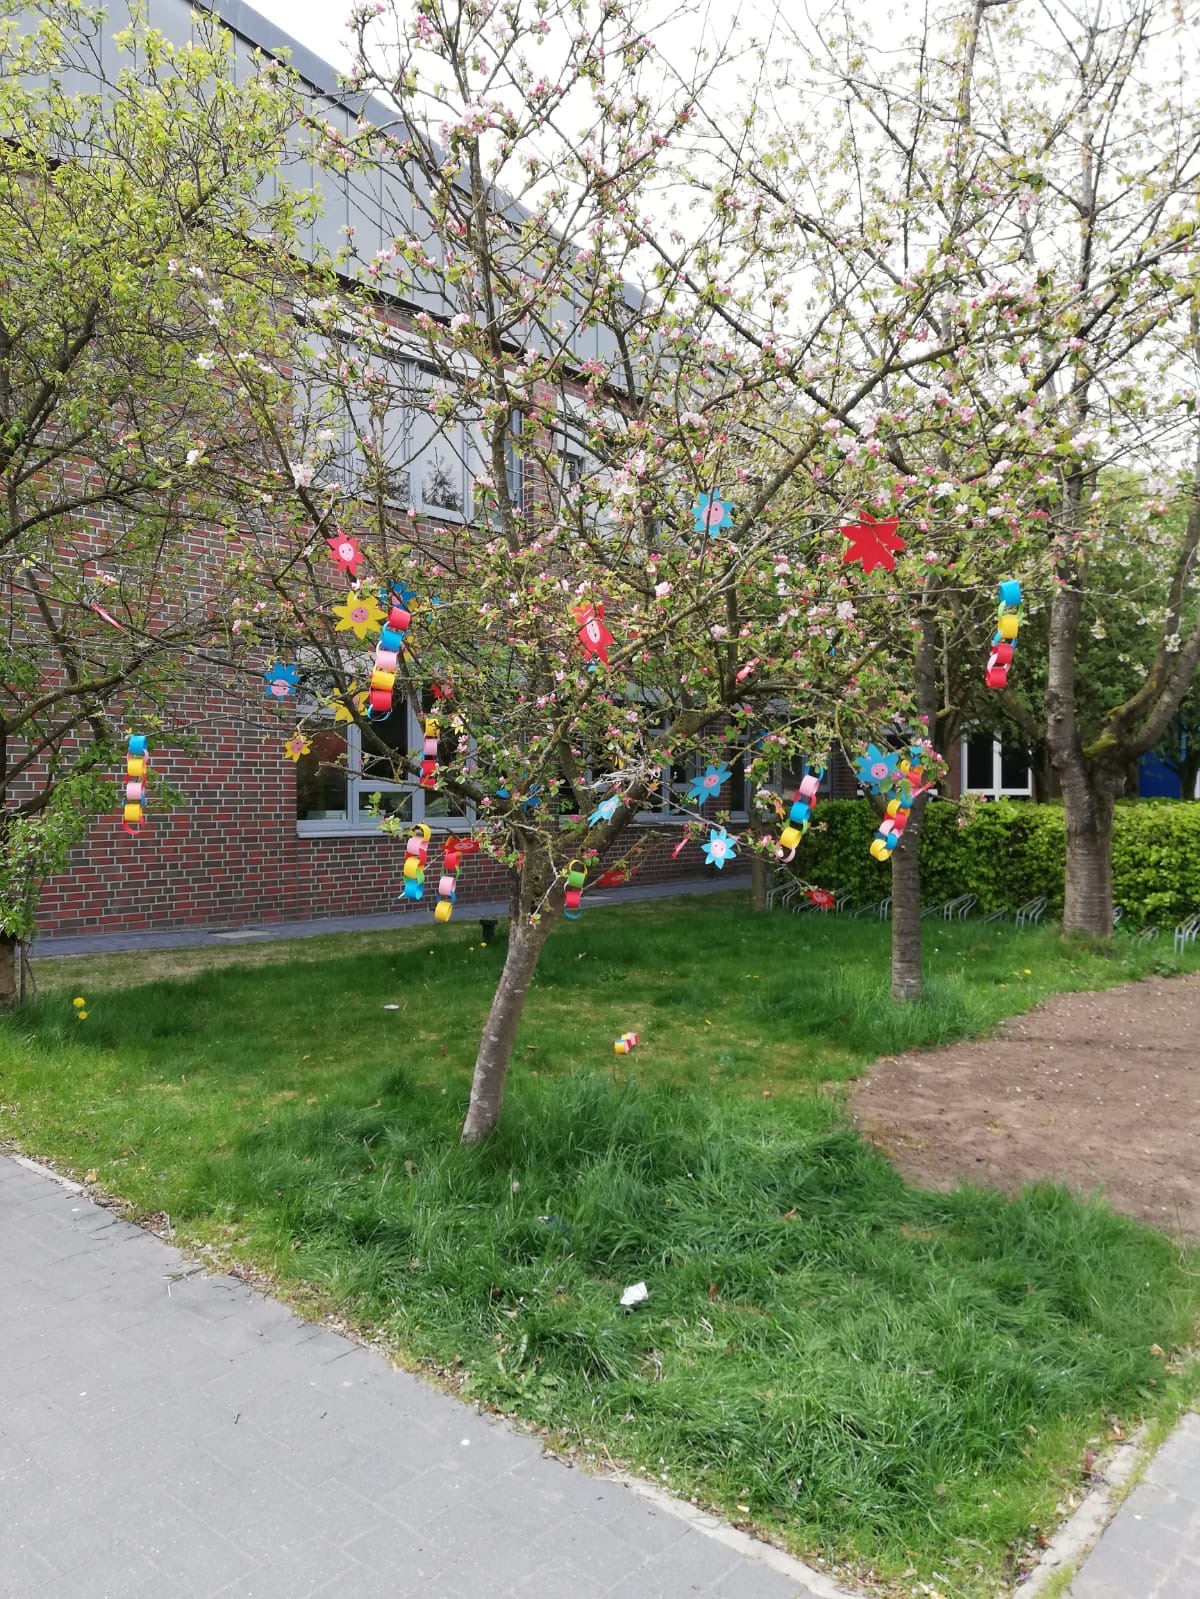 Unsere GrundschülerInnen haben auf dem Schulplatz diesen tollen, bunten Maibaum geschmückt. 